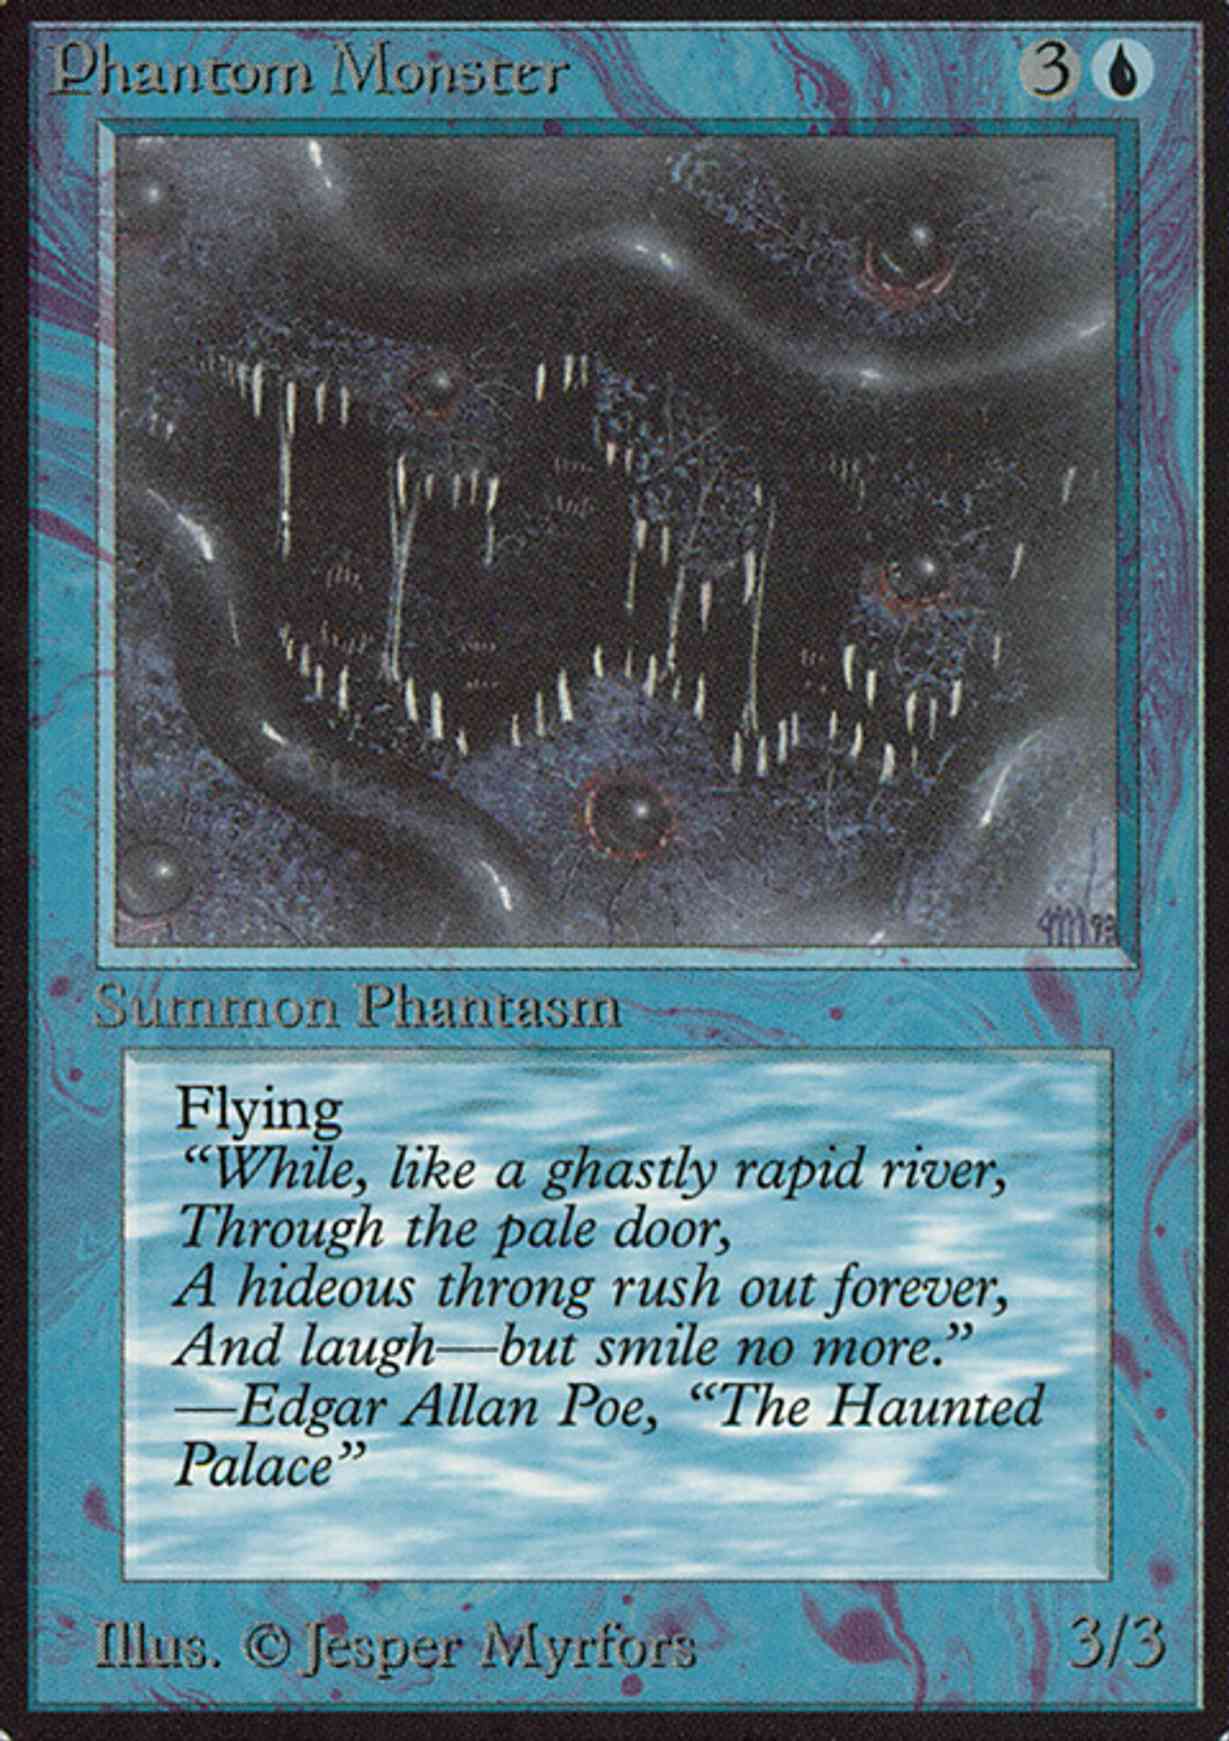 Phantom Monster magic card front